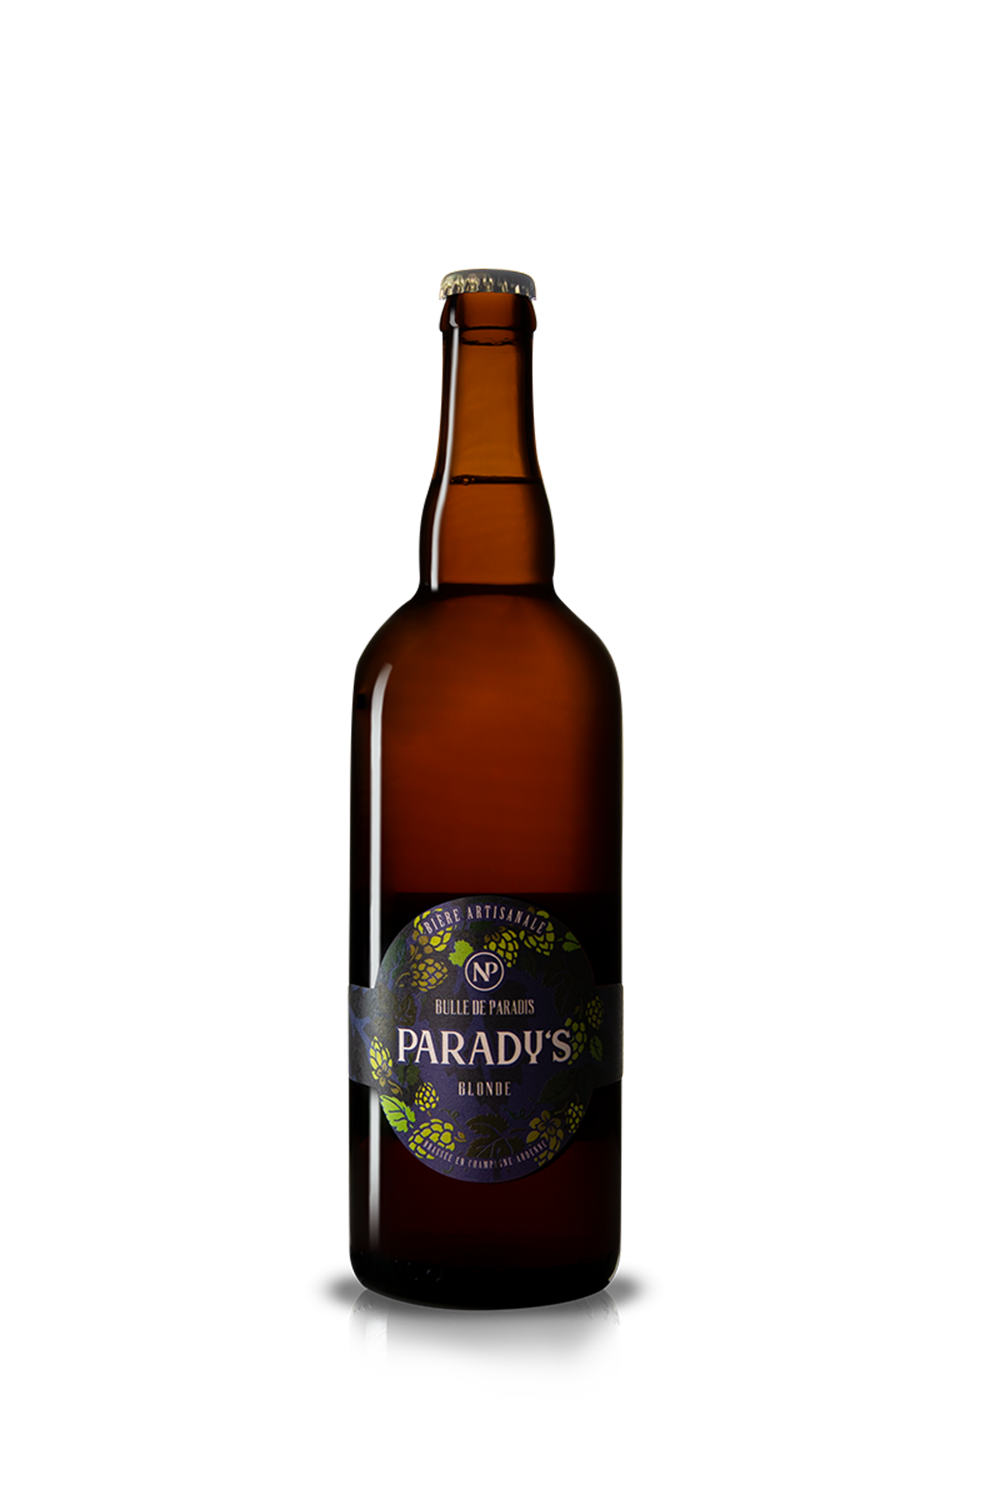 Bière blonde Parady's - Domaine Nicolo & Paradis